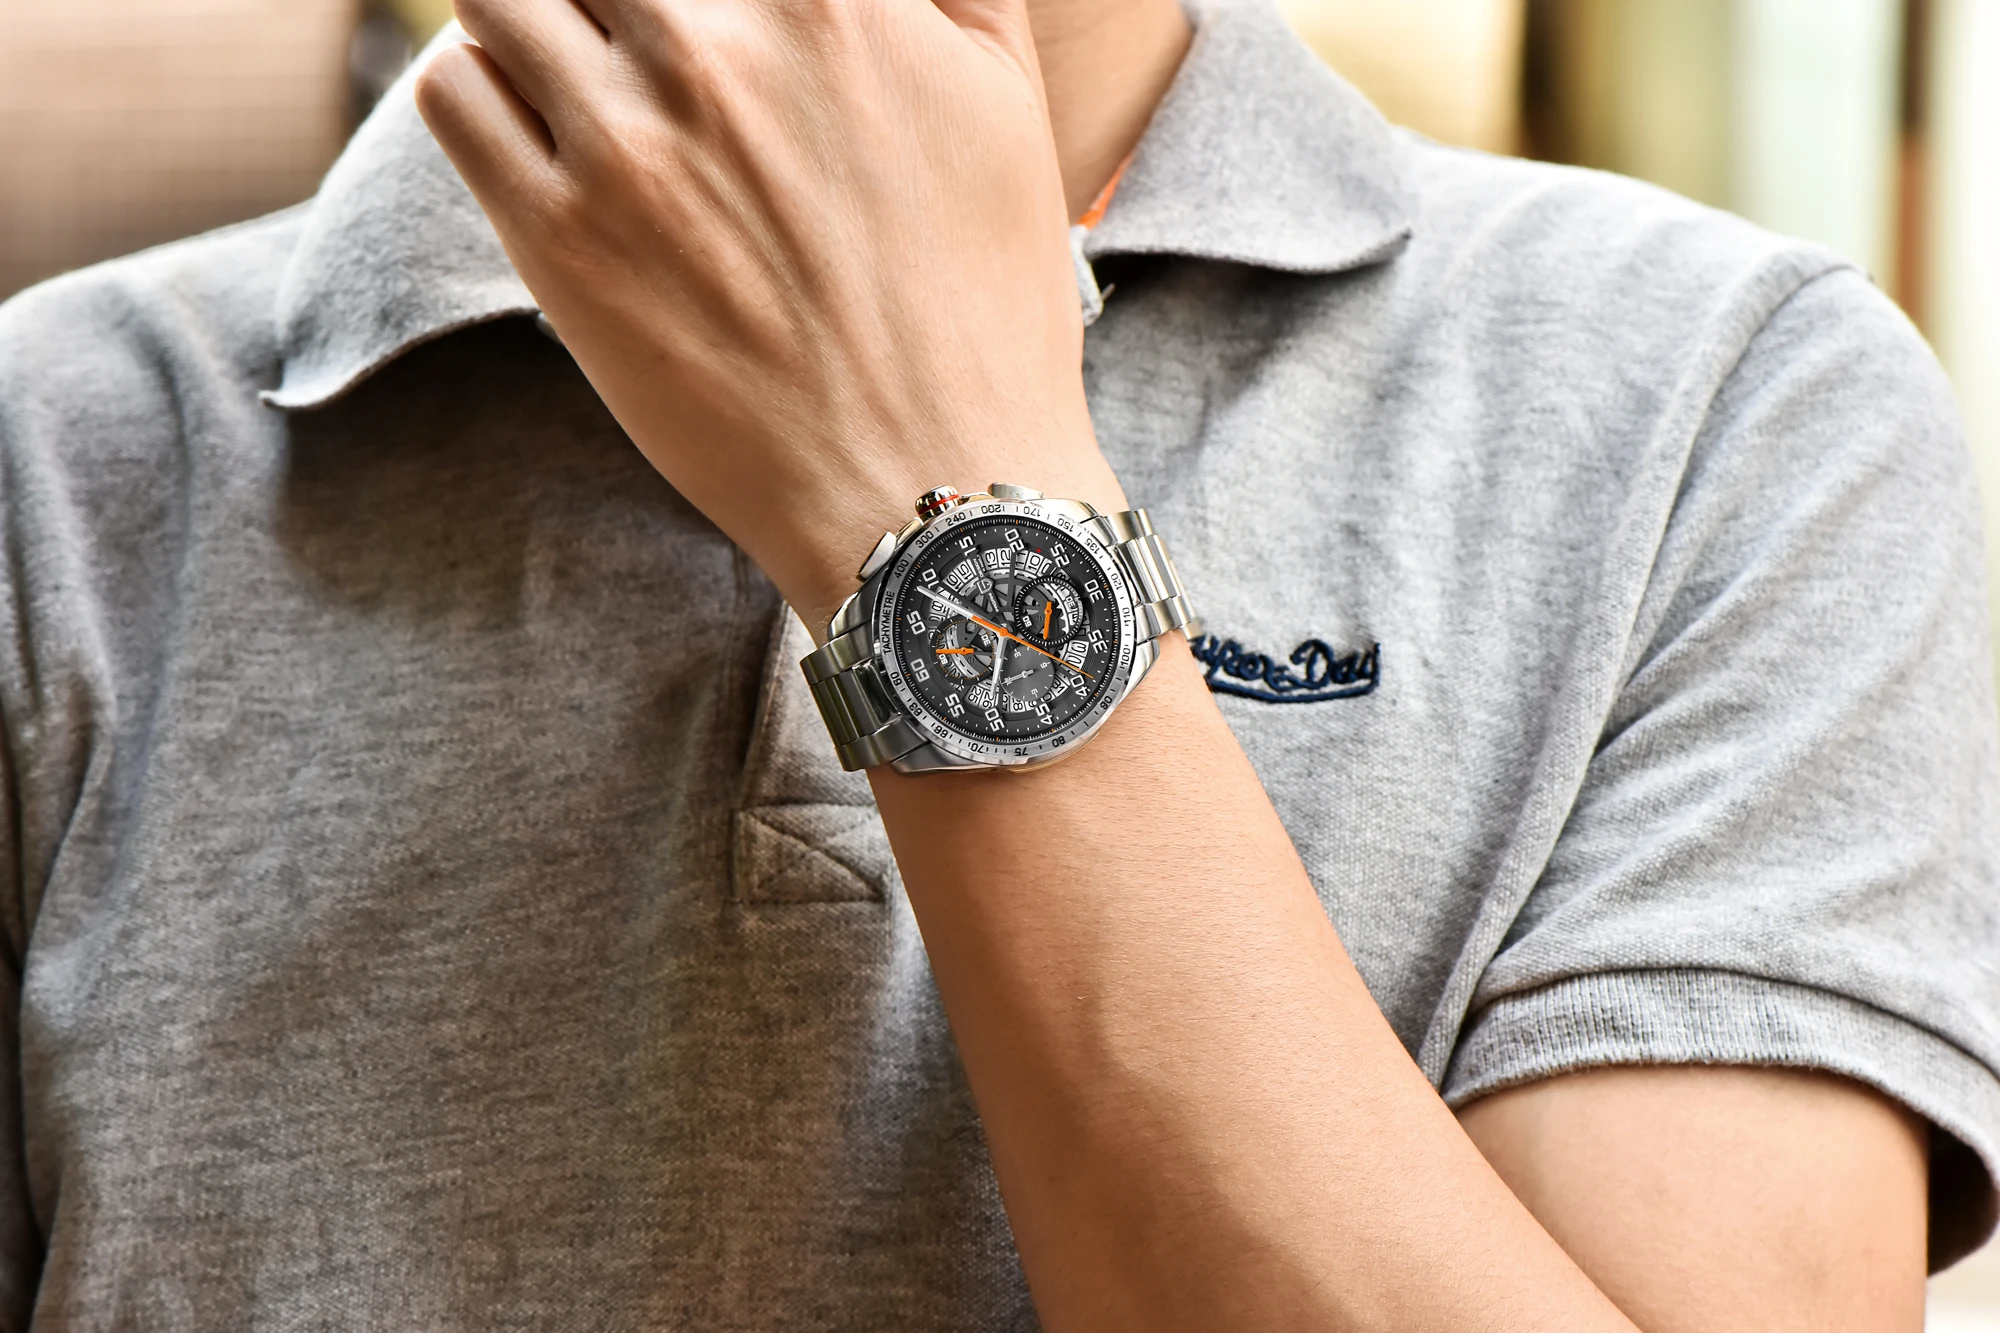 PAGANI Дизайн Avant Sport 3D большой циферблат кварцевые мужские часы Роскошные военные армейские черные стальные часы водонепроницаемые наручные часы с хронографом